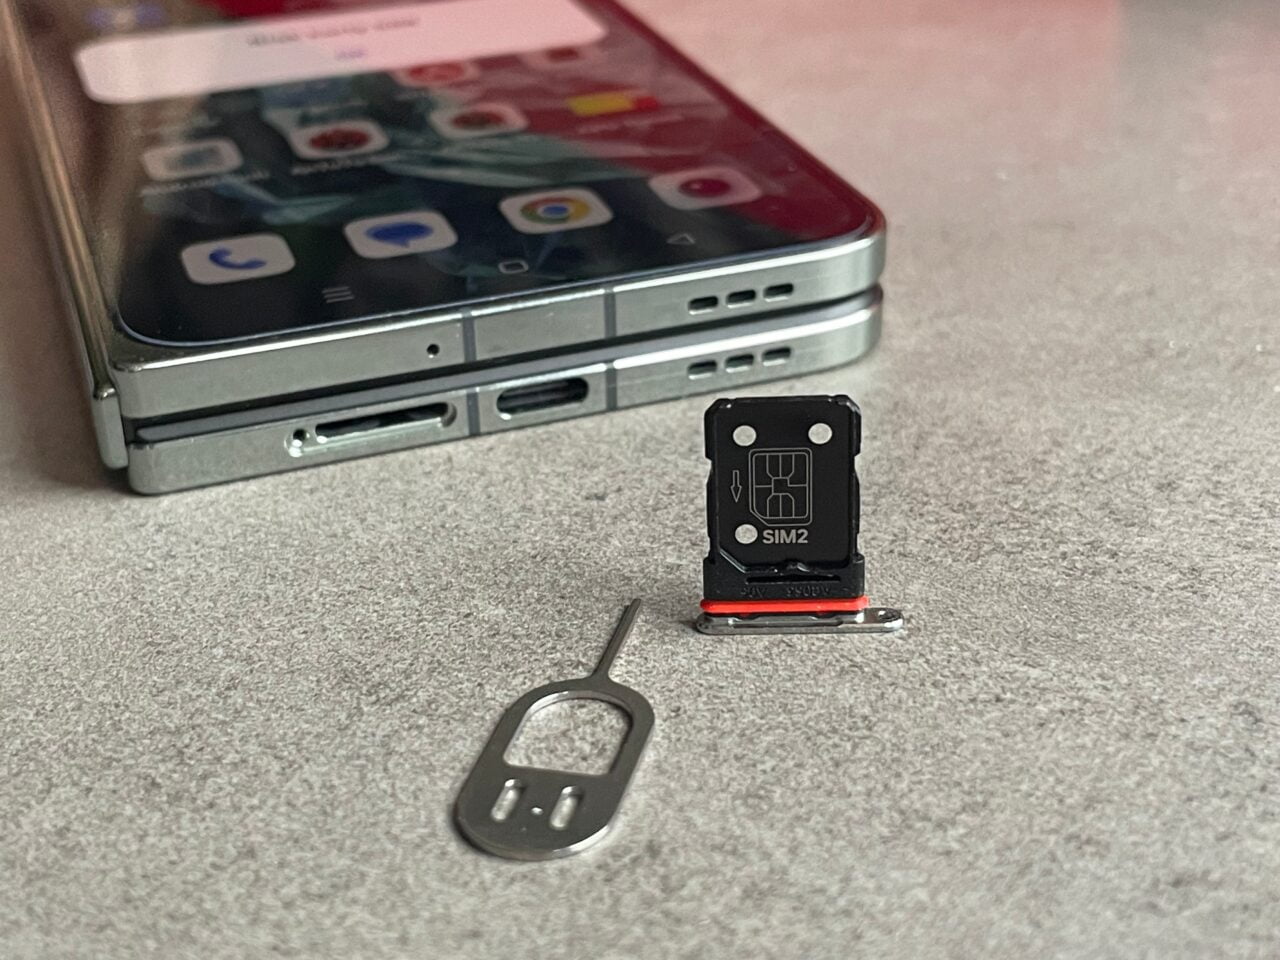 Smartfon z otwartym tacką na karty SIM obok wyciągniętej tacki z oznaczeniem SIM2 oraz narzędziem do jej wyjęcia na szarym tle. recenzja oneplus open